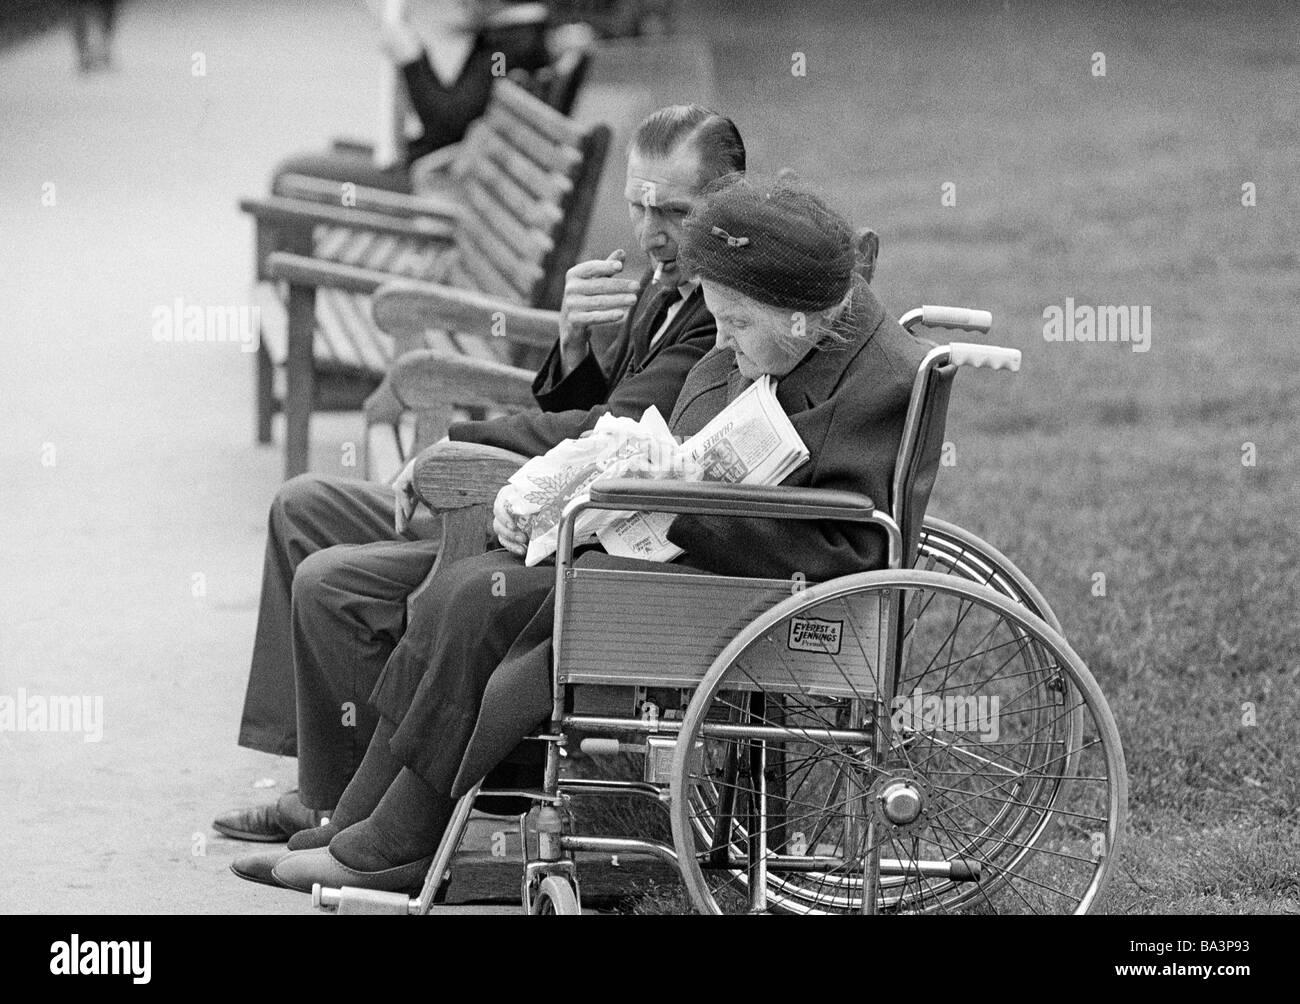 Negli anni settanta, foto in bianco e nero, persone di handicap fisici, la donna più anziana si siede nella sedia a rotelle, suo marito si siede accanto a lei su un banco, di età compresa tra i 65 e gli 75 anni, Gran Bretagna, Inghilterra, Londra Foto Stock